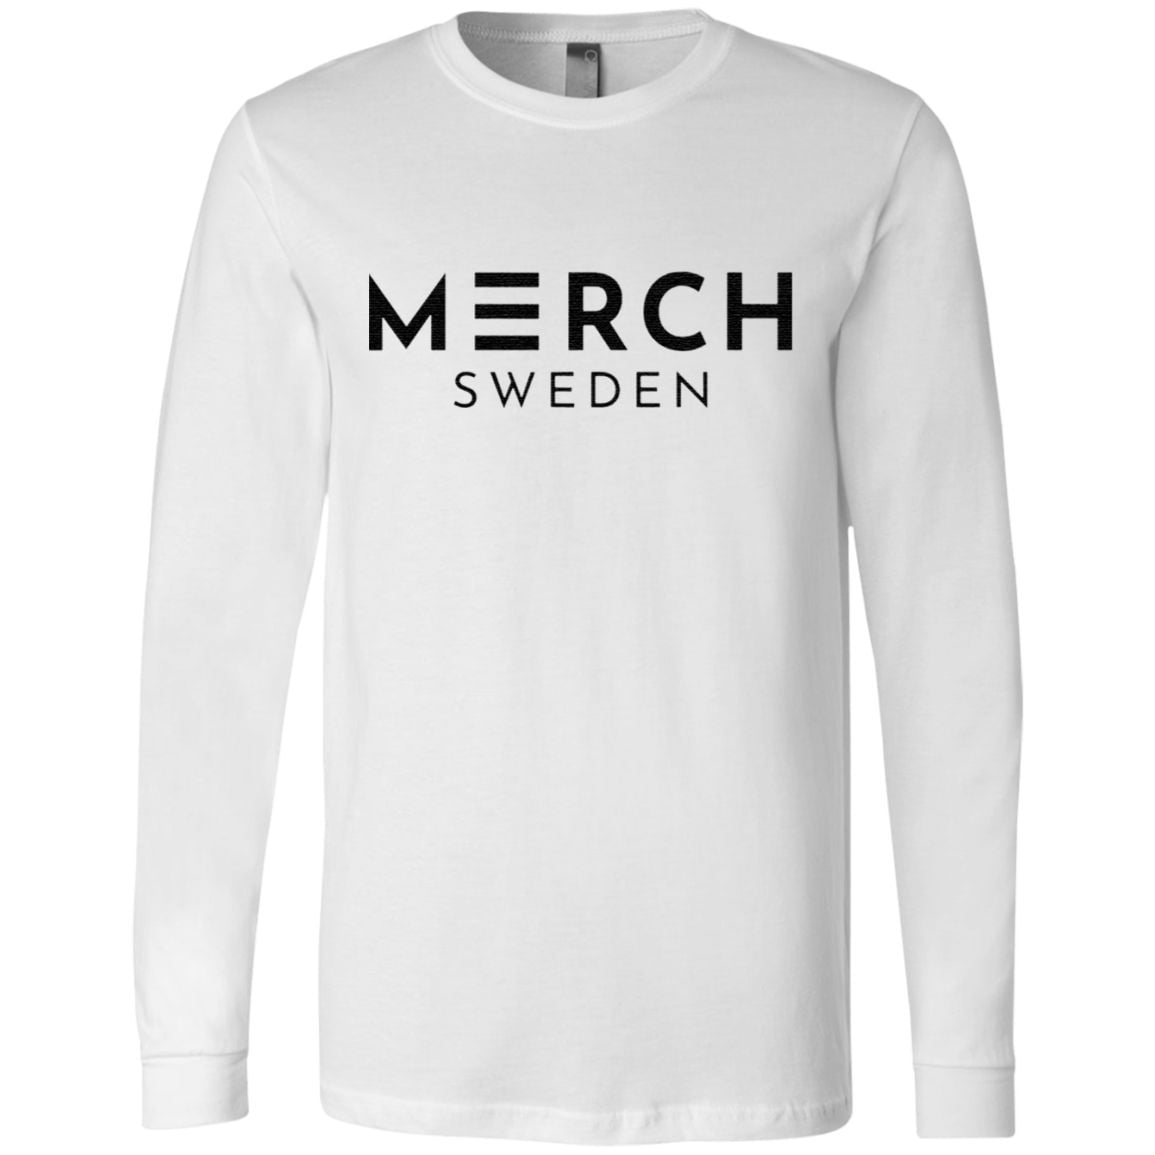 merch sweden t shirt